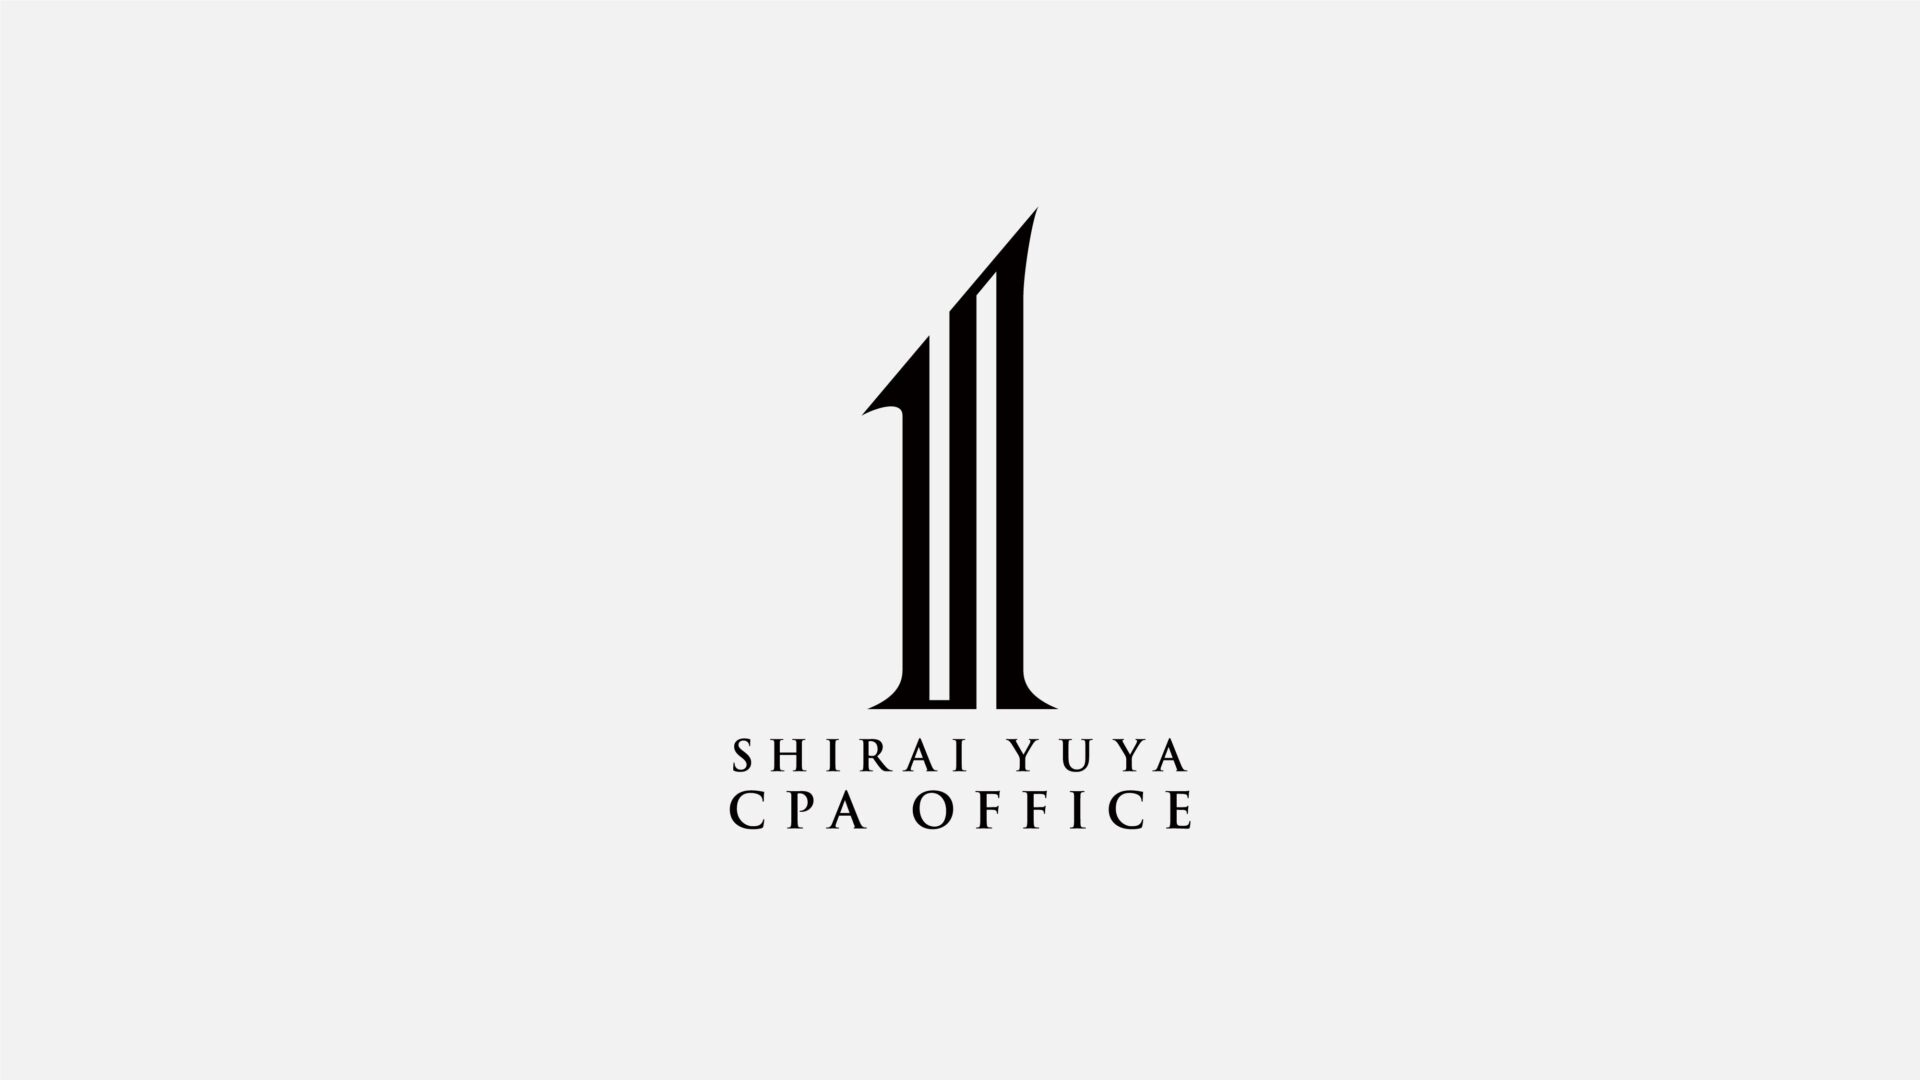 「SHIRAI YUYA  CPA OFFICE」のサムネイル画像